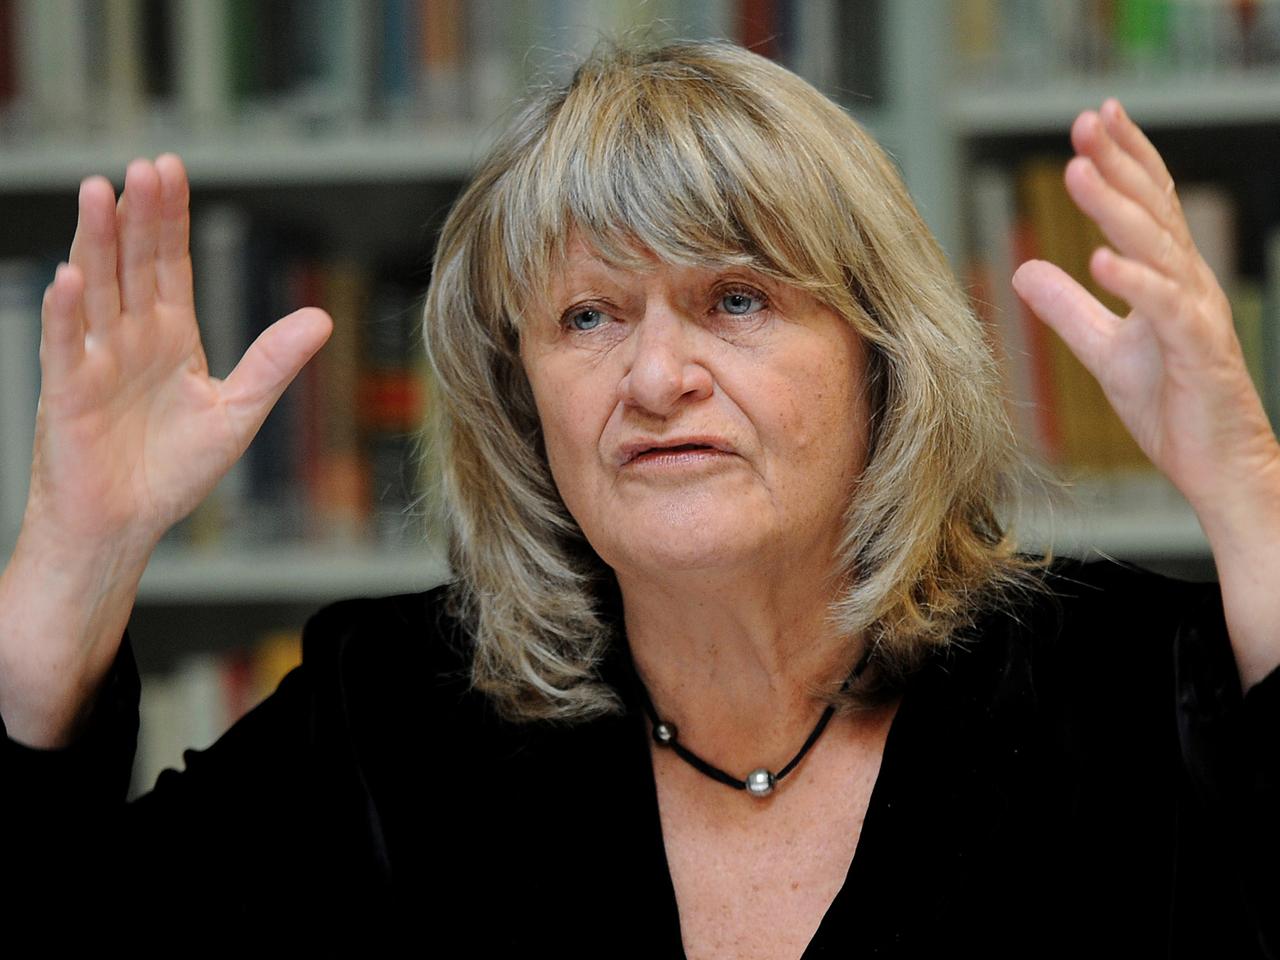 Die Frauenrechtlerin Alice Schwarzer spricht mit zur Untermalung des Gesagten erhobenen Händen.